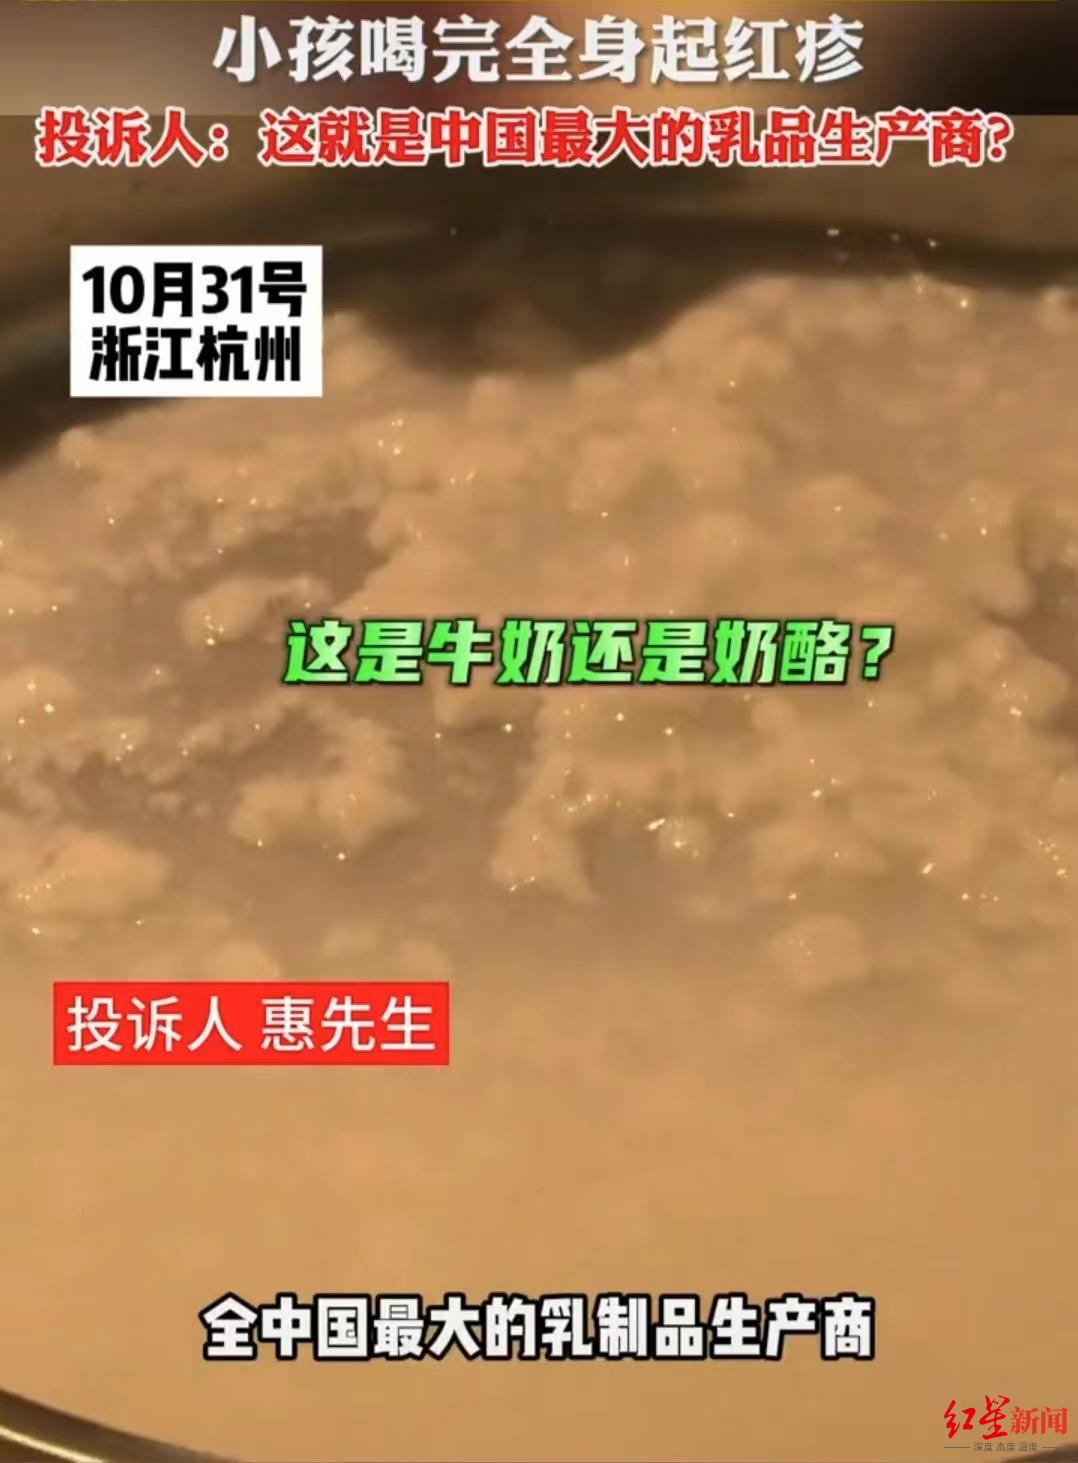 ▲惠先生投诉称特仑苏牛奶呈块状。视频截图